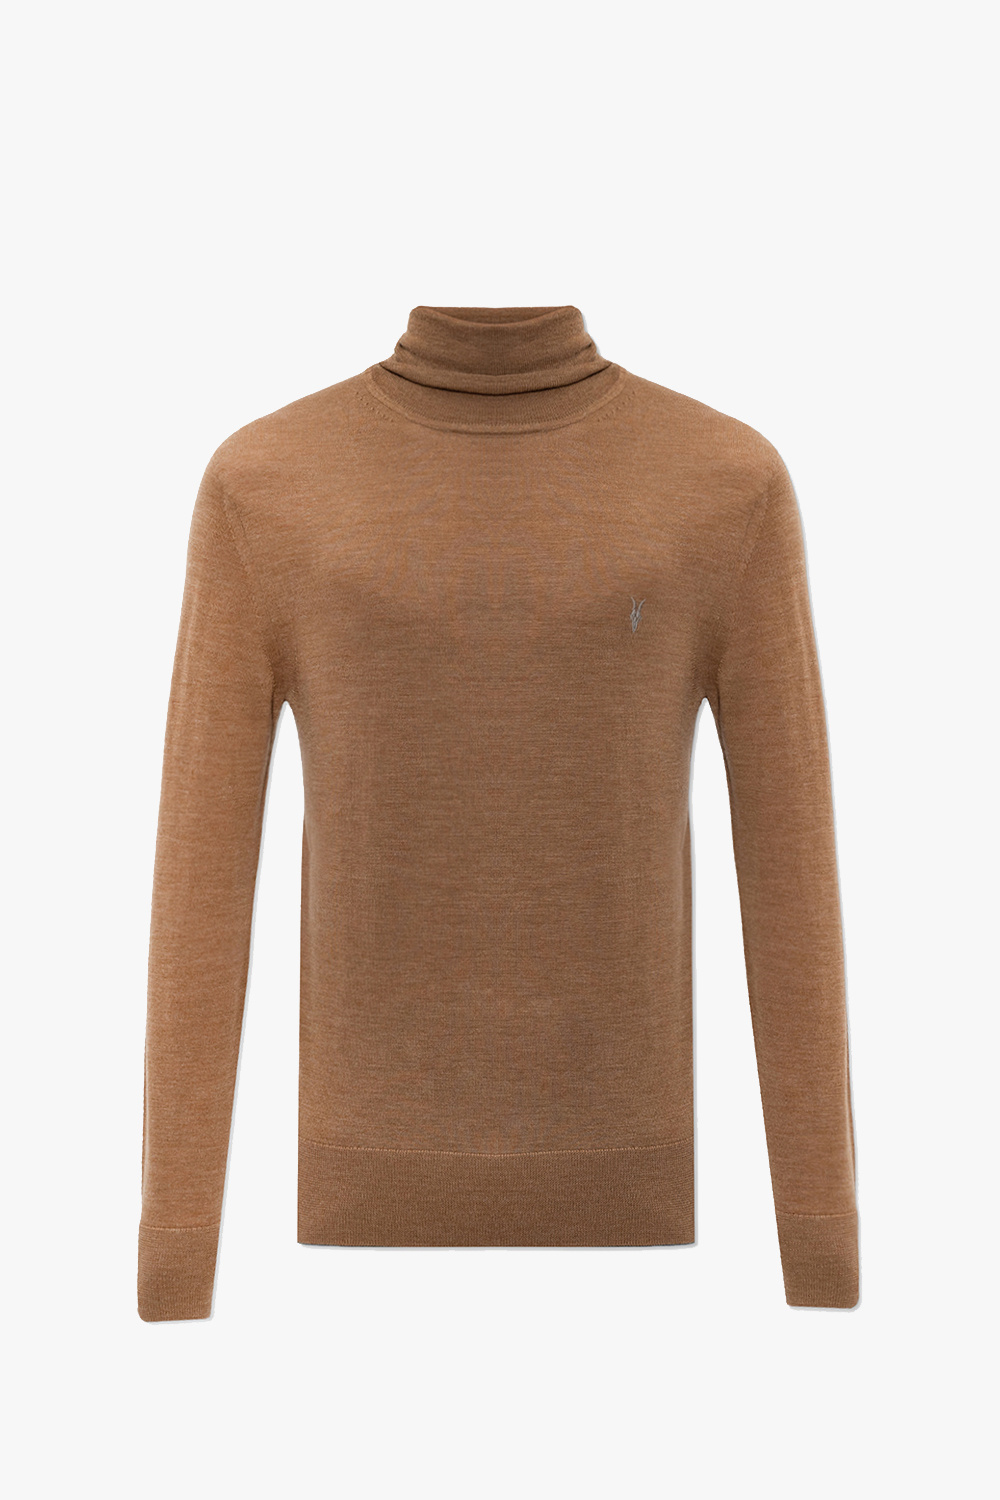 AllSaints ‘Mode’ wool turtleneck sweater